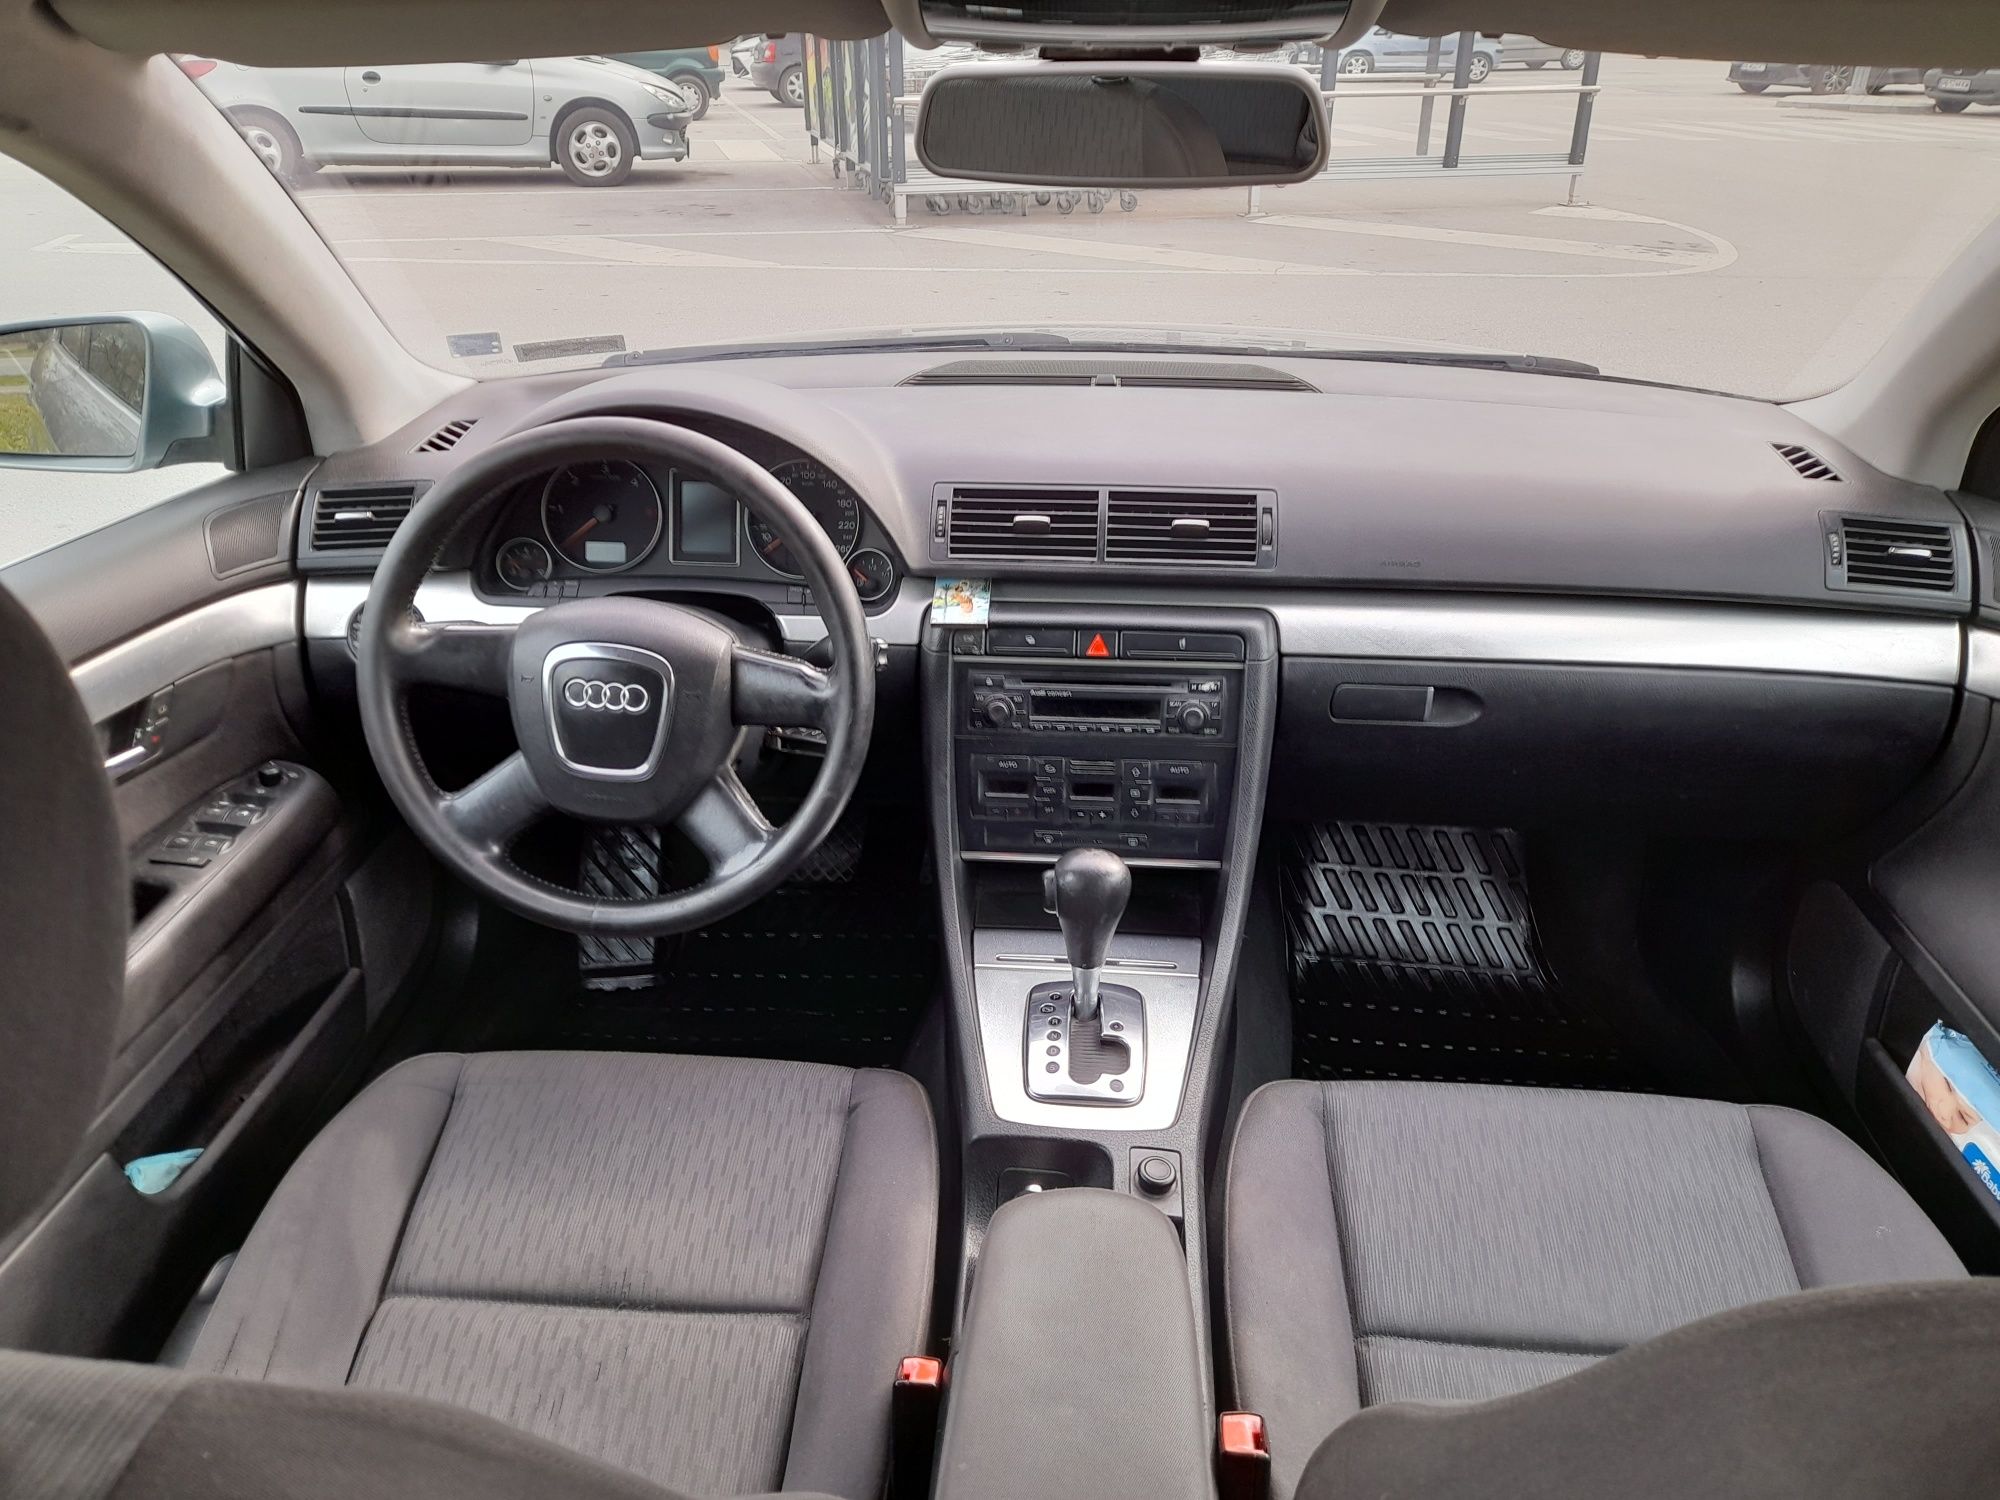 Audi A4 B7 2.0 TDI